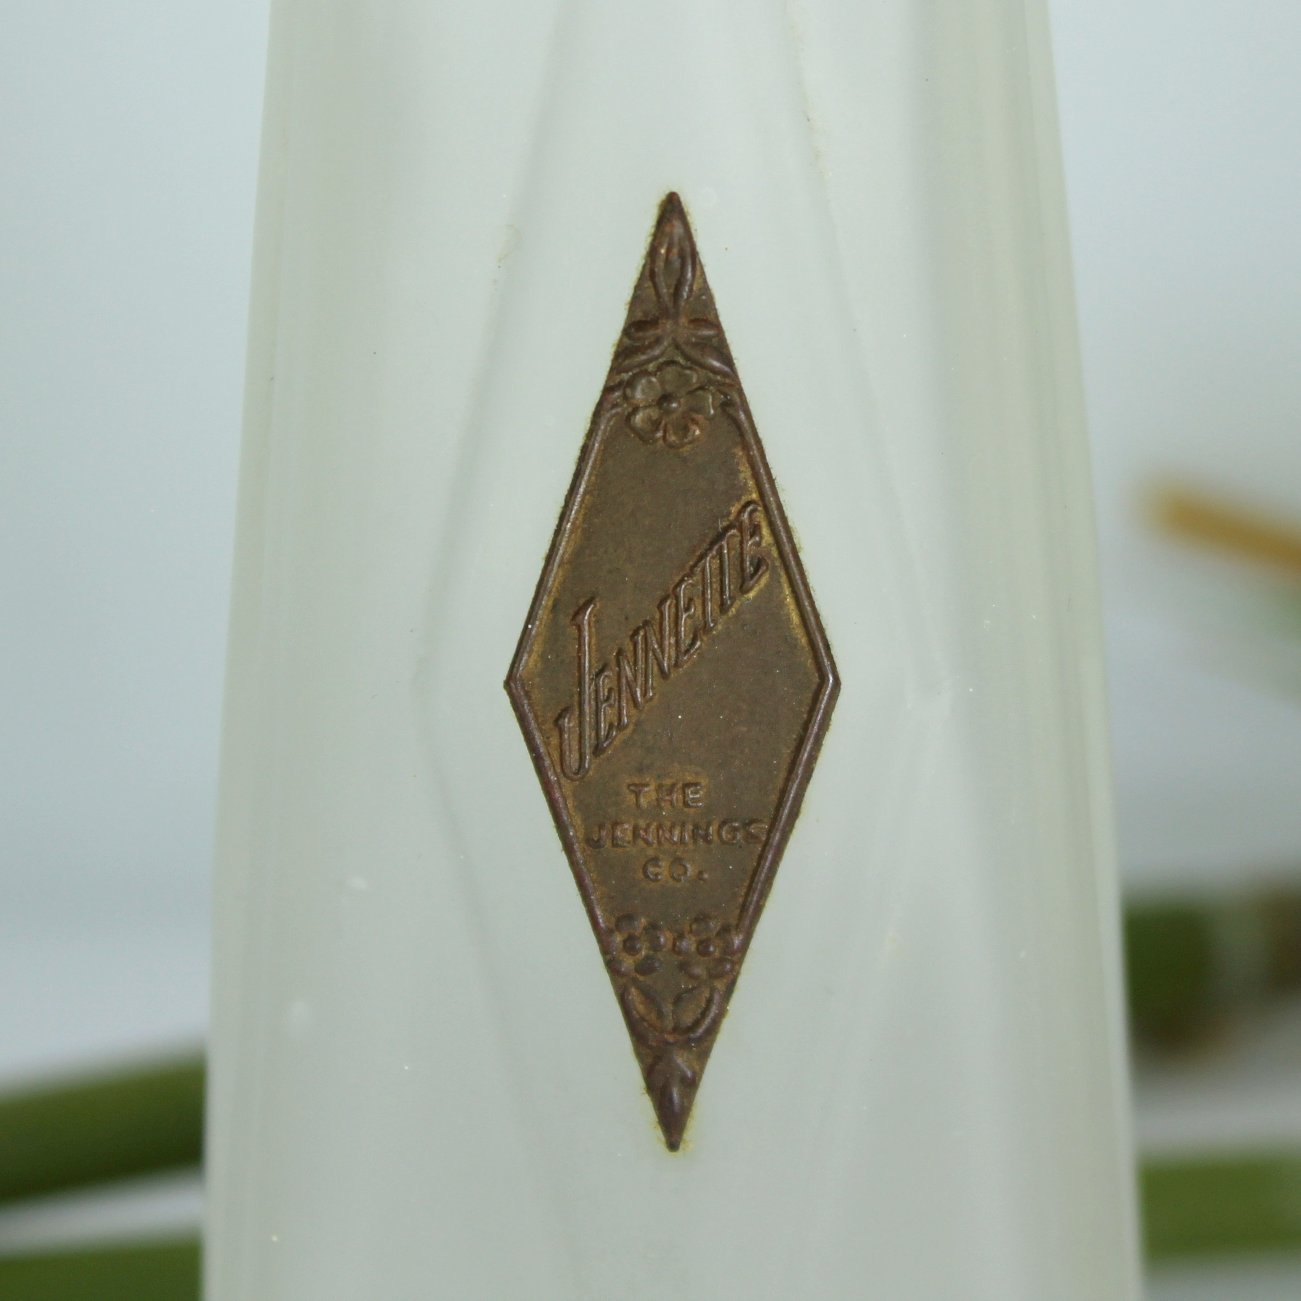 Truly Rare Jennette Antique Scent Perfume Bottle Jennings Co Bottle patent 1916 Wm Orem